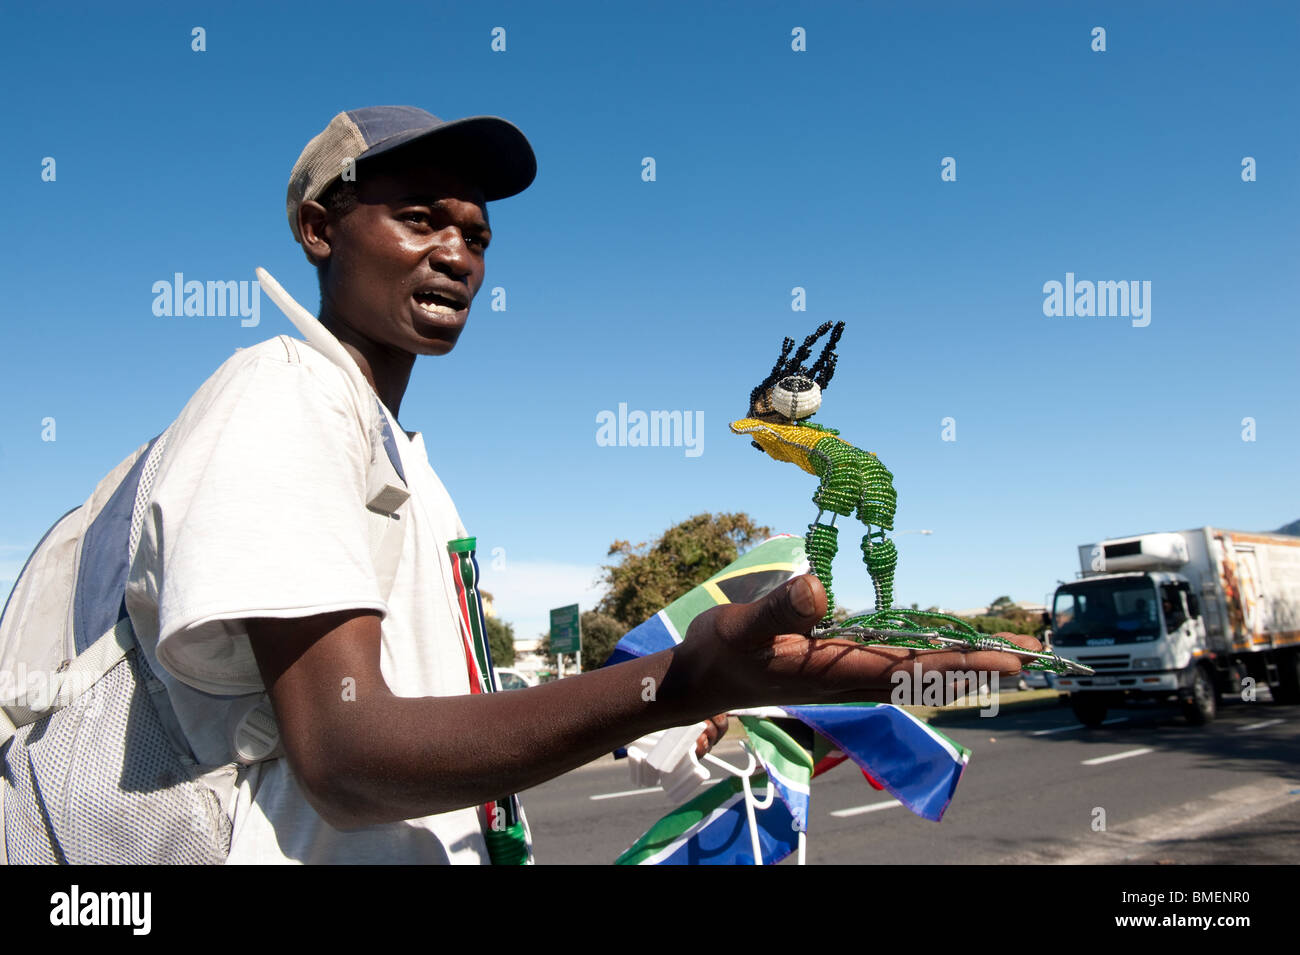 Straßenhändler verkauft handgefertigte Fußball Spieler Statue hergestellt aus Draht und Glasperlen, Cape Town, Südafrika Stockfoto